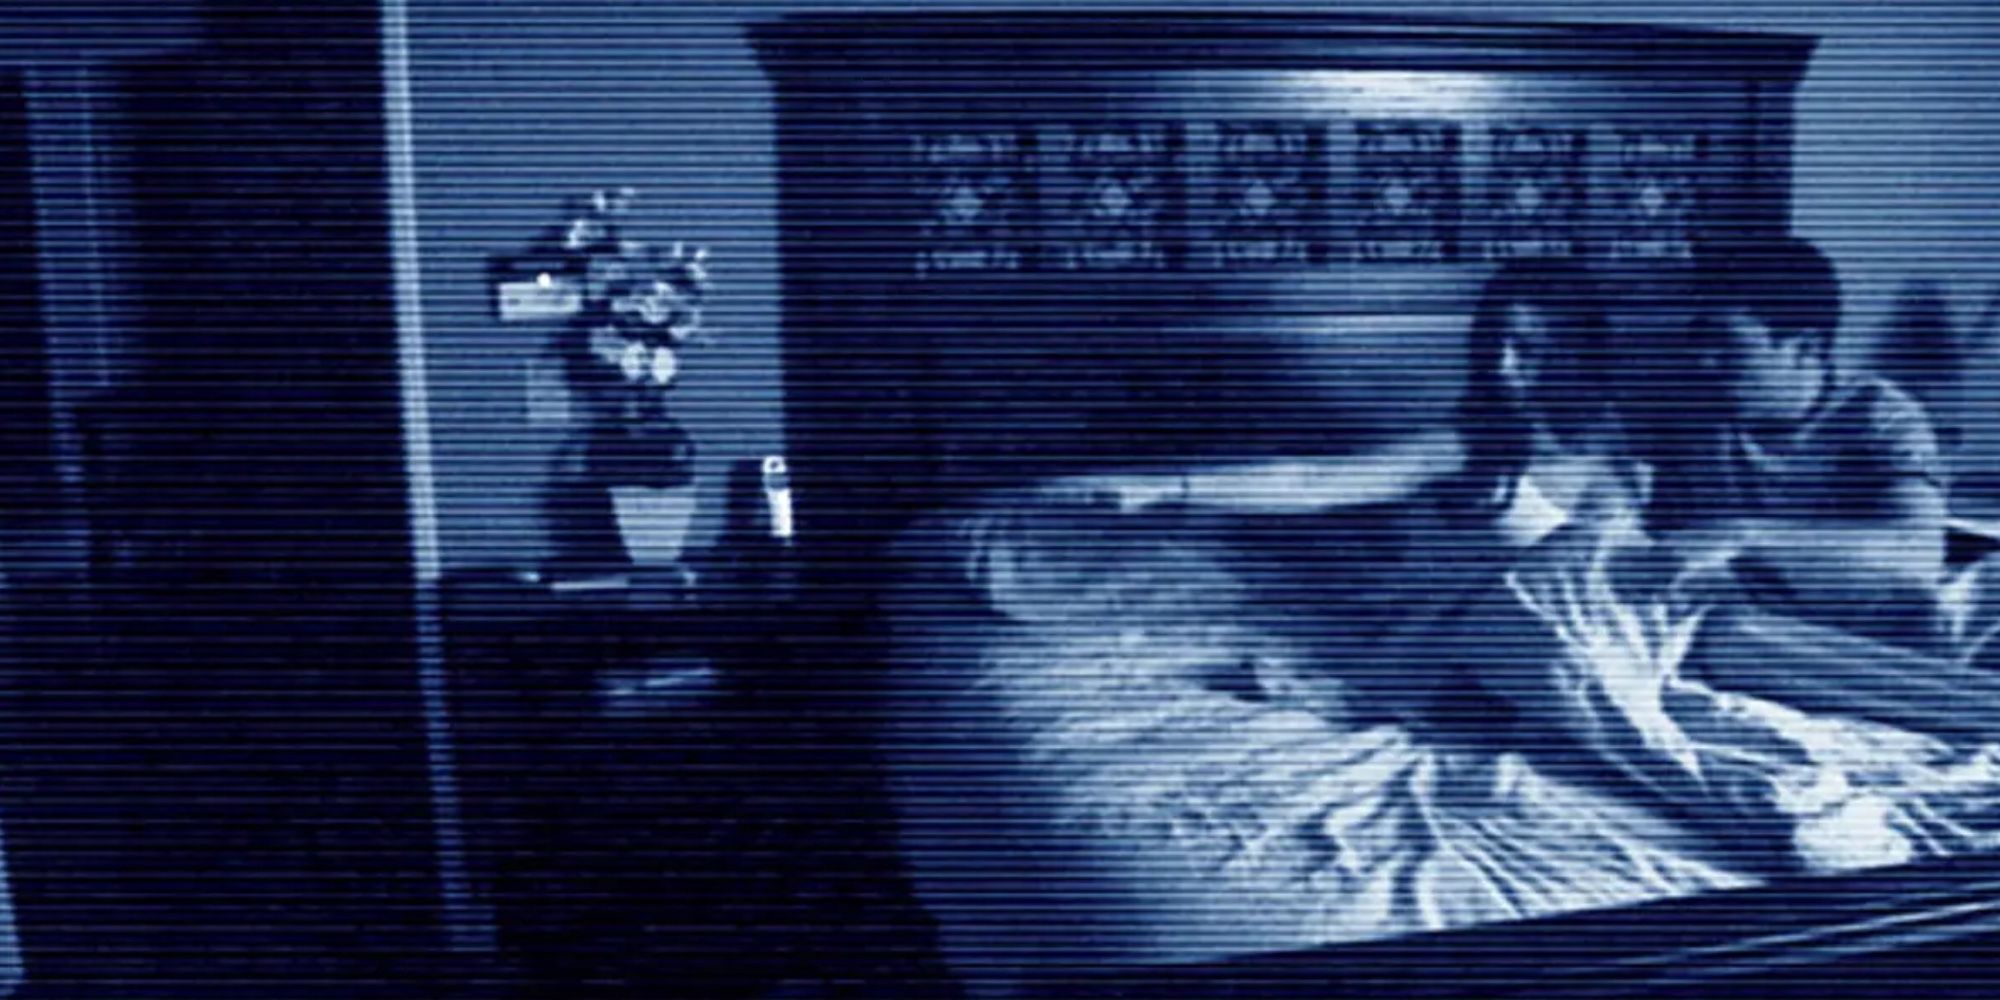 Pasangan Aktivitas Paranormal di depan kamera saat di tempat tidur